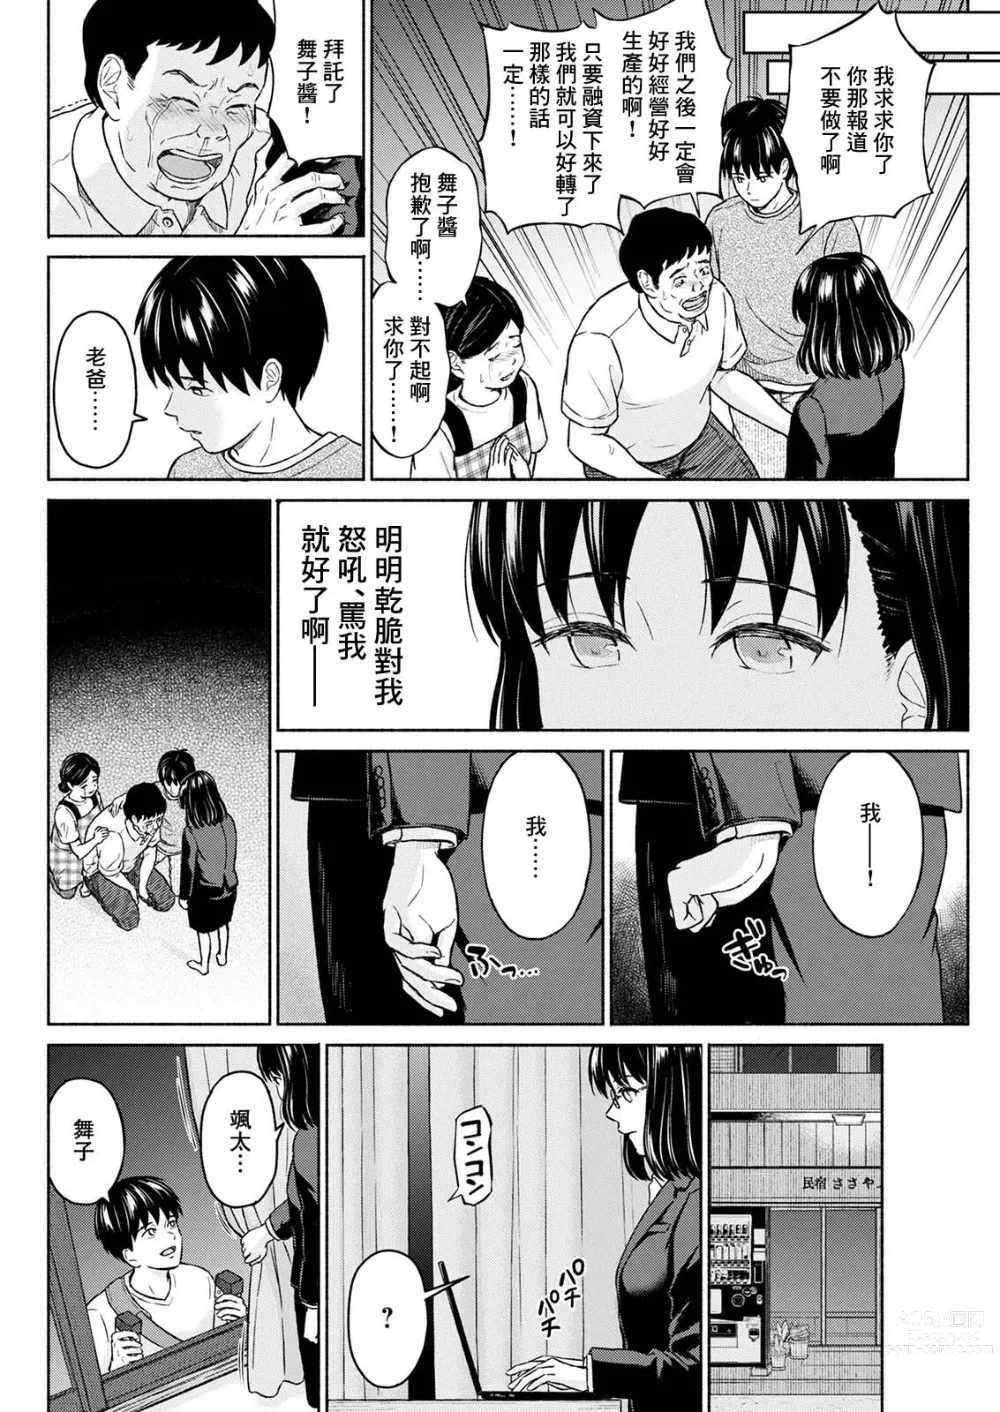 Page 18 of manga Marude Rokugatsu no Kohan o Fuku Kaze no you ni Kouhen